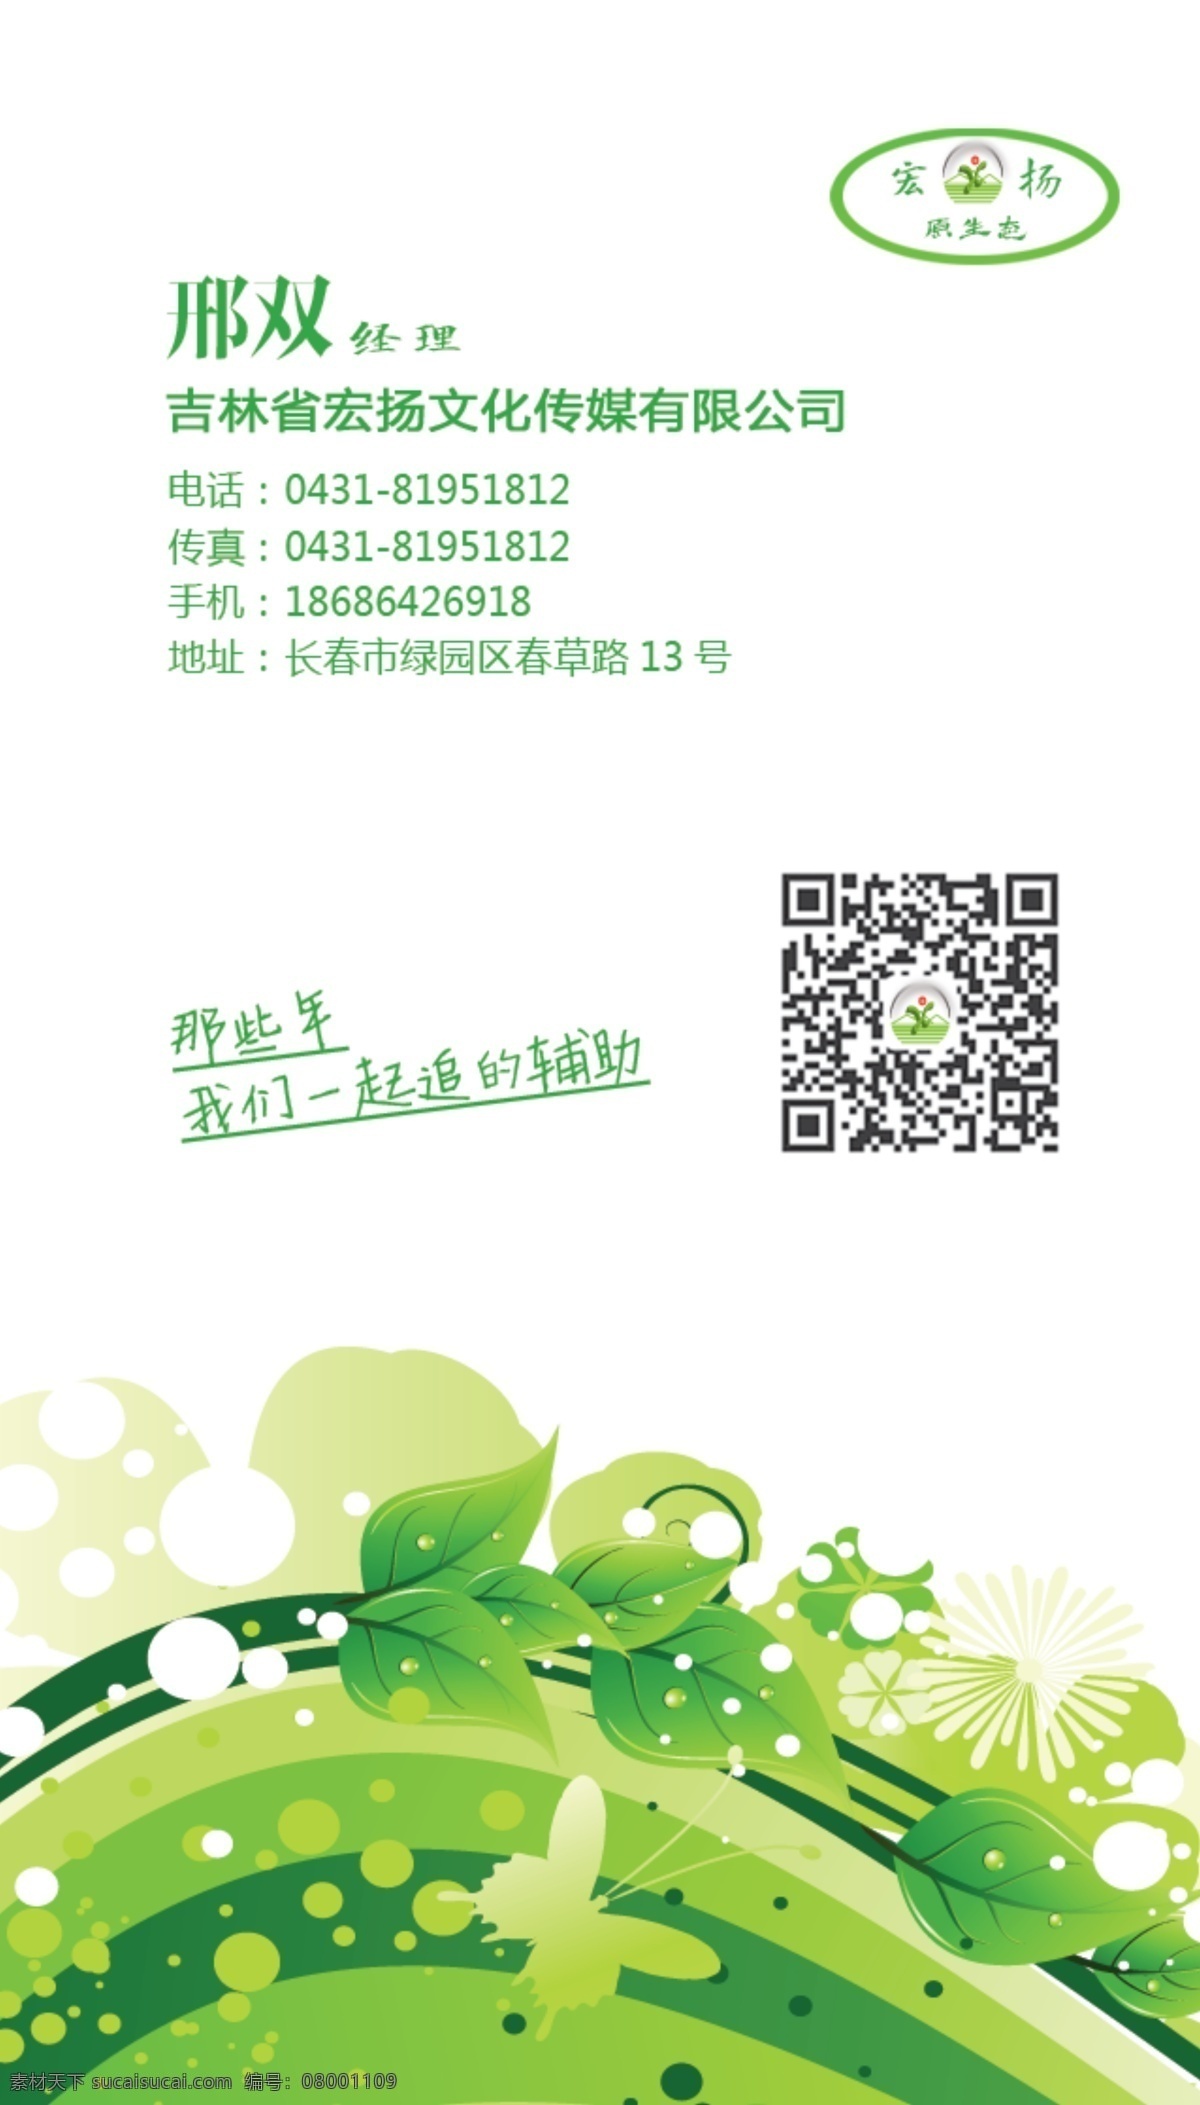 绿色名片 绿色 名片 源文件 原生态 树叶 花藤 名片卡片 广告设计模板